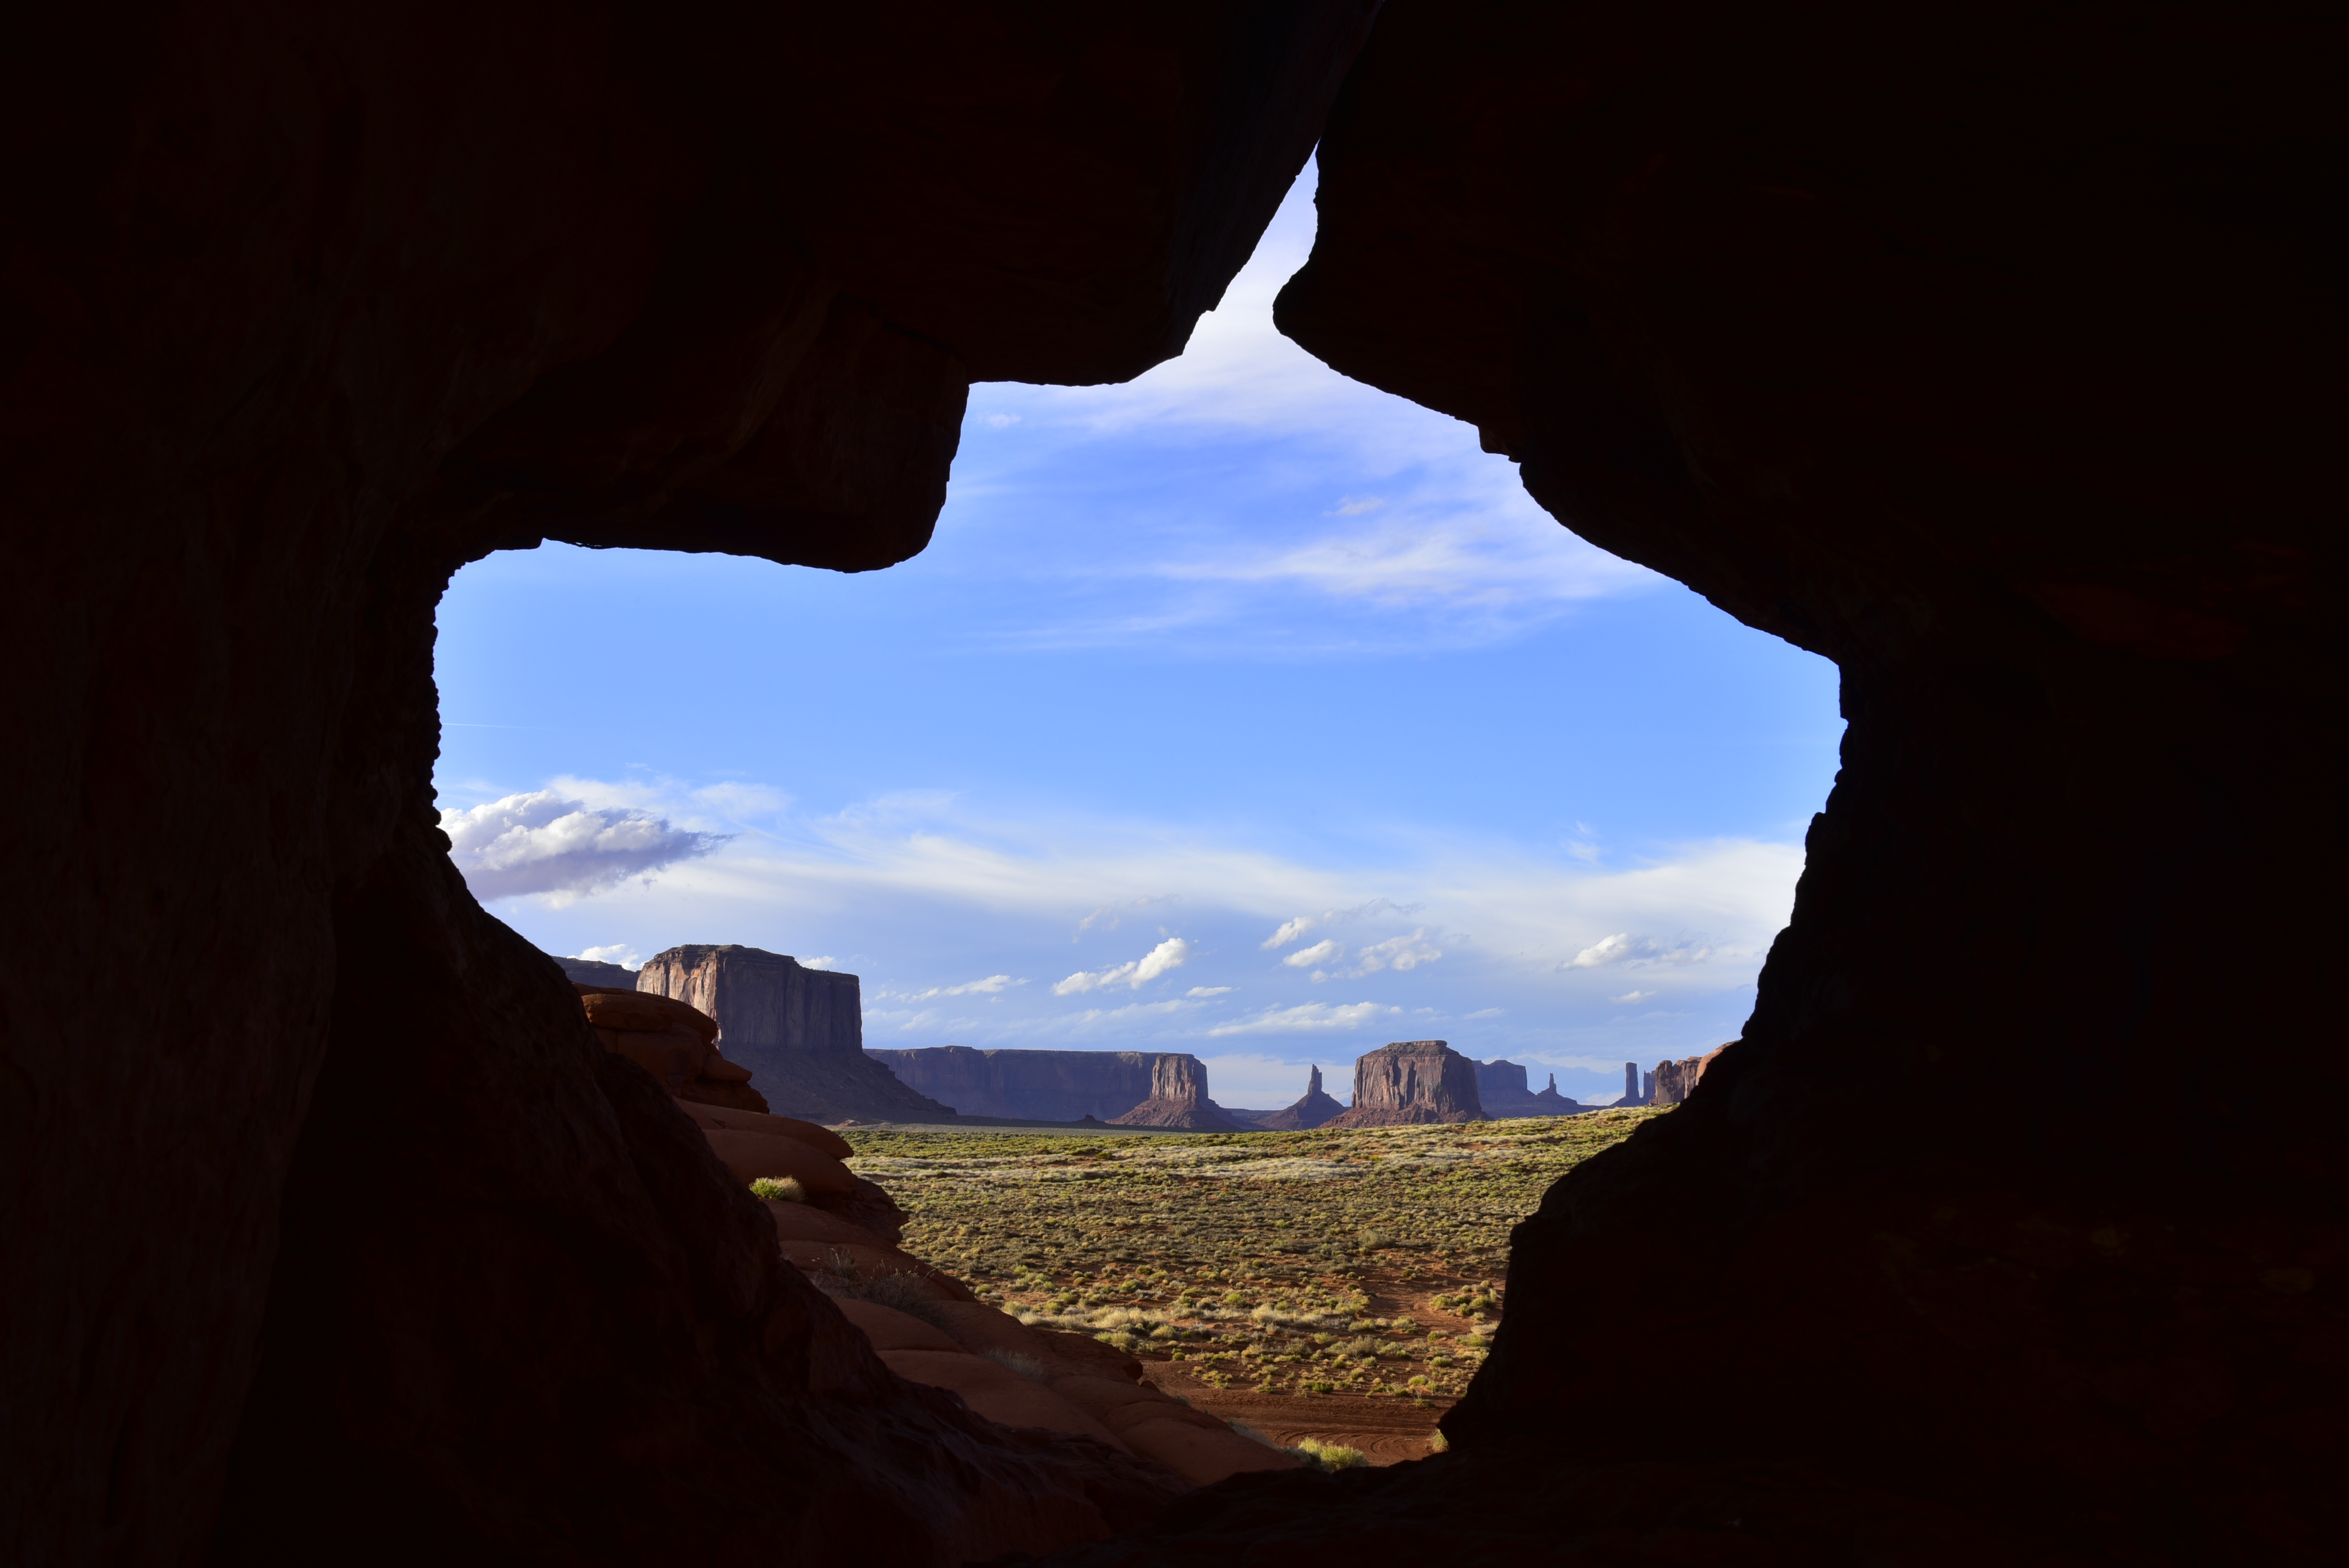 Pottery Arch  -  Monument Valley Navajo Tribal Park, Arizona